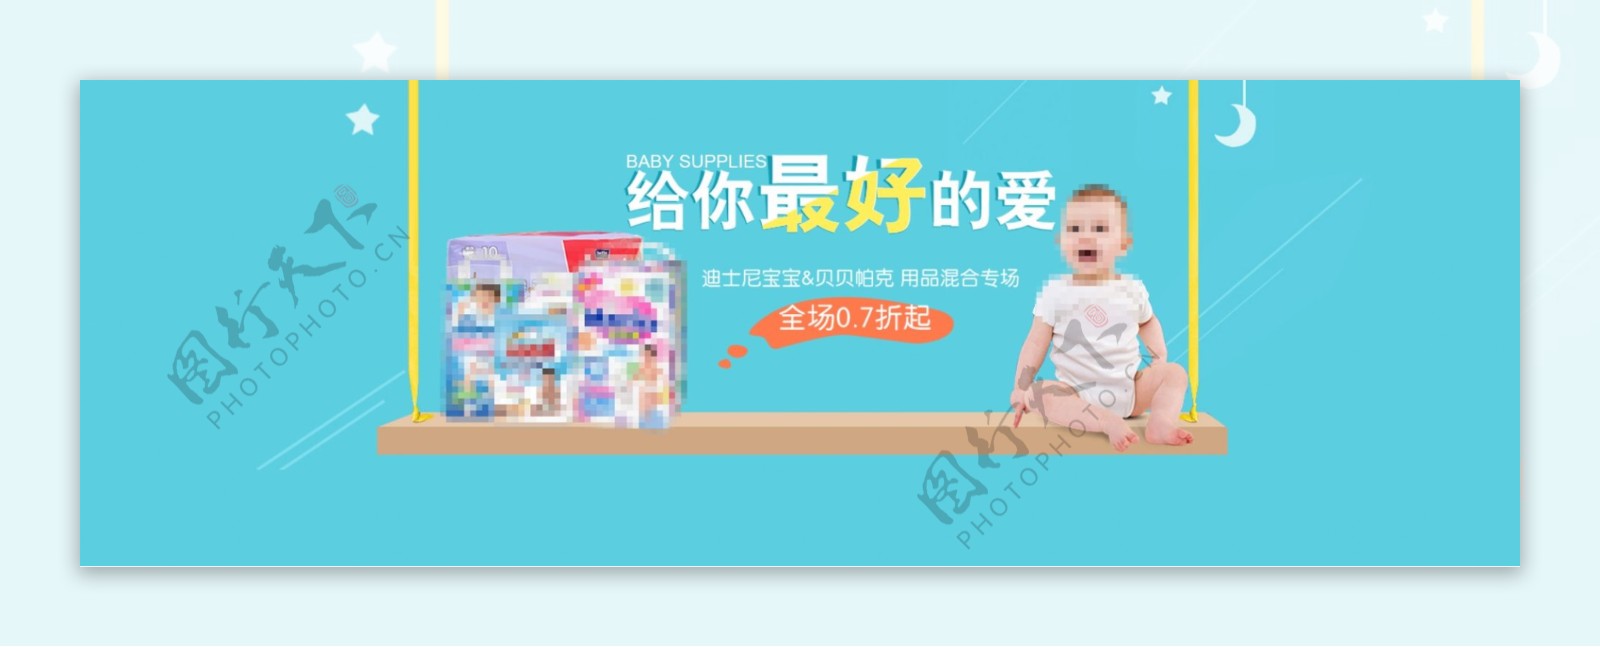 天猫淘宝母婴用品纸尿裤海报banner